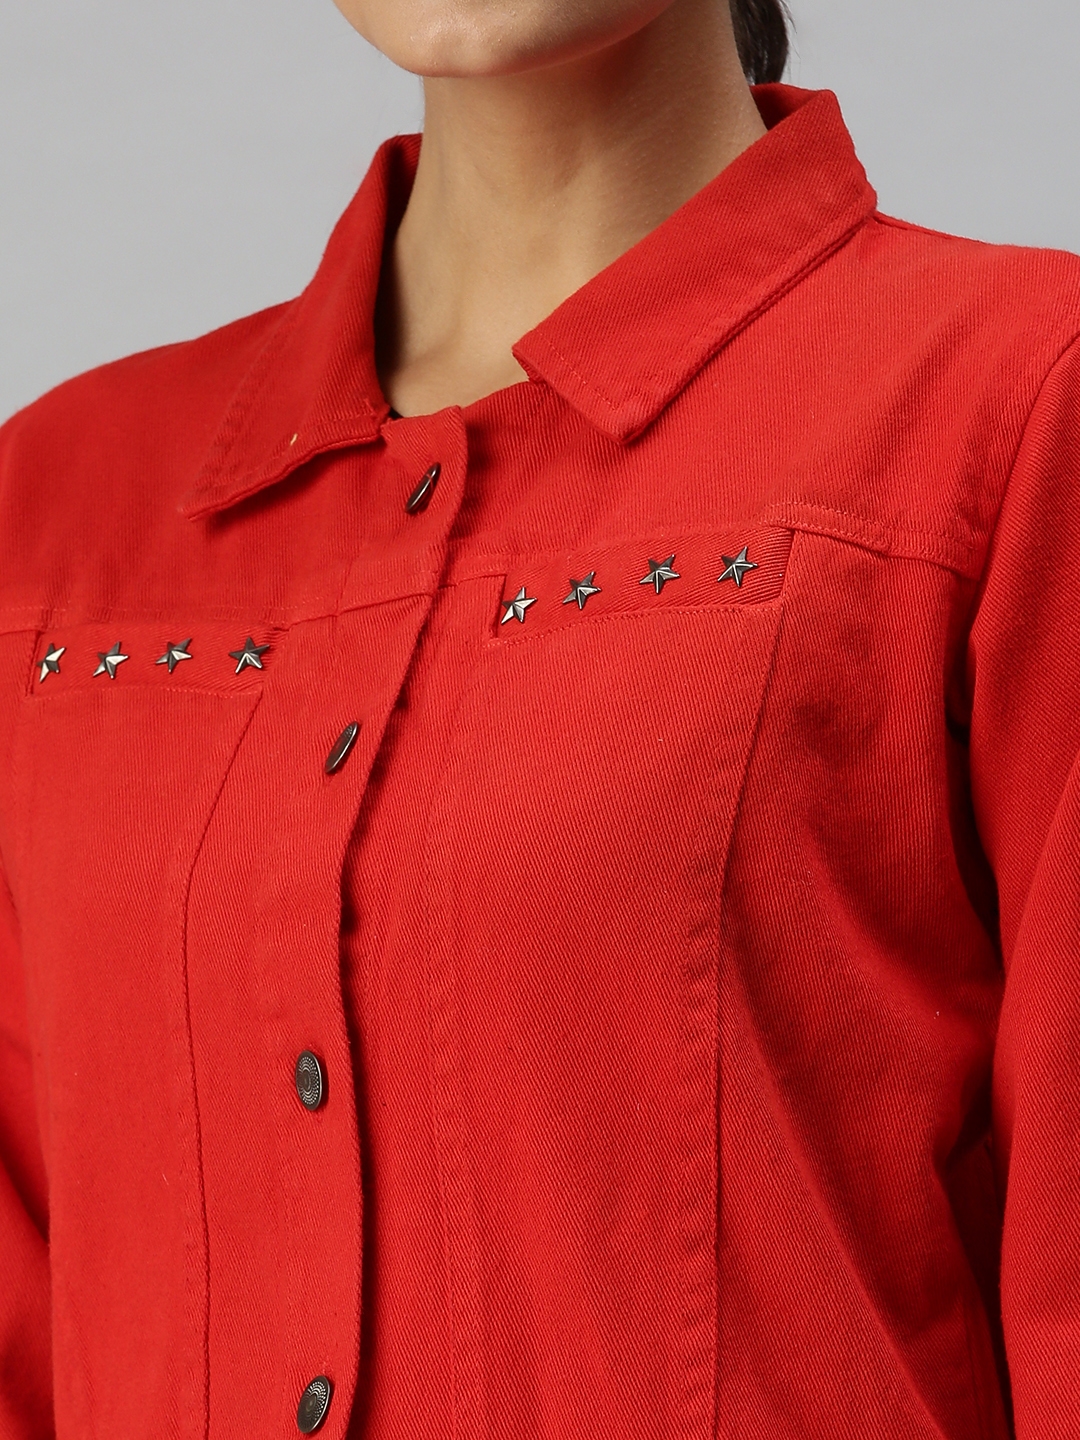 Women's Red Denim Solid Denim Jackets